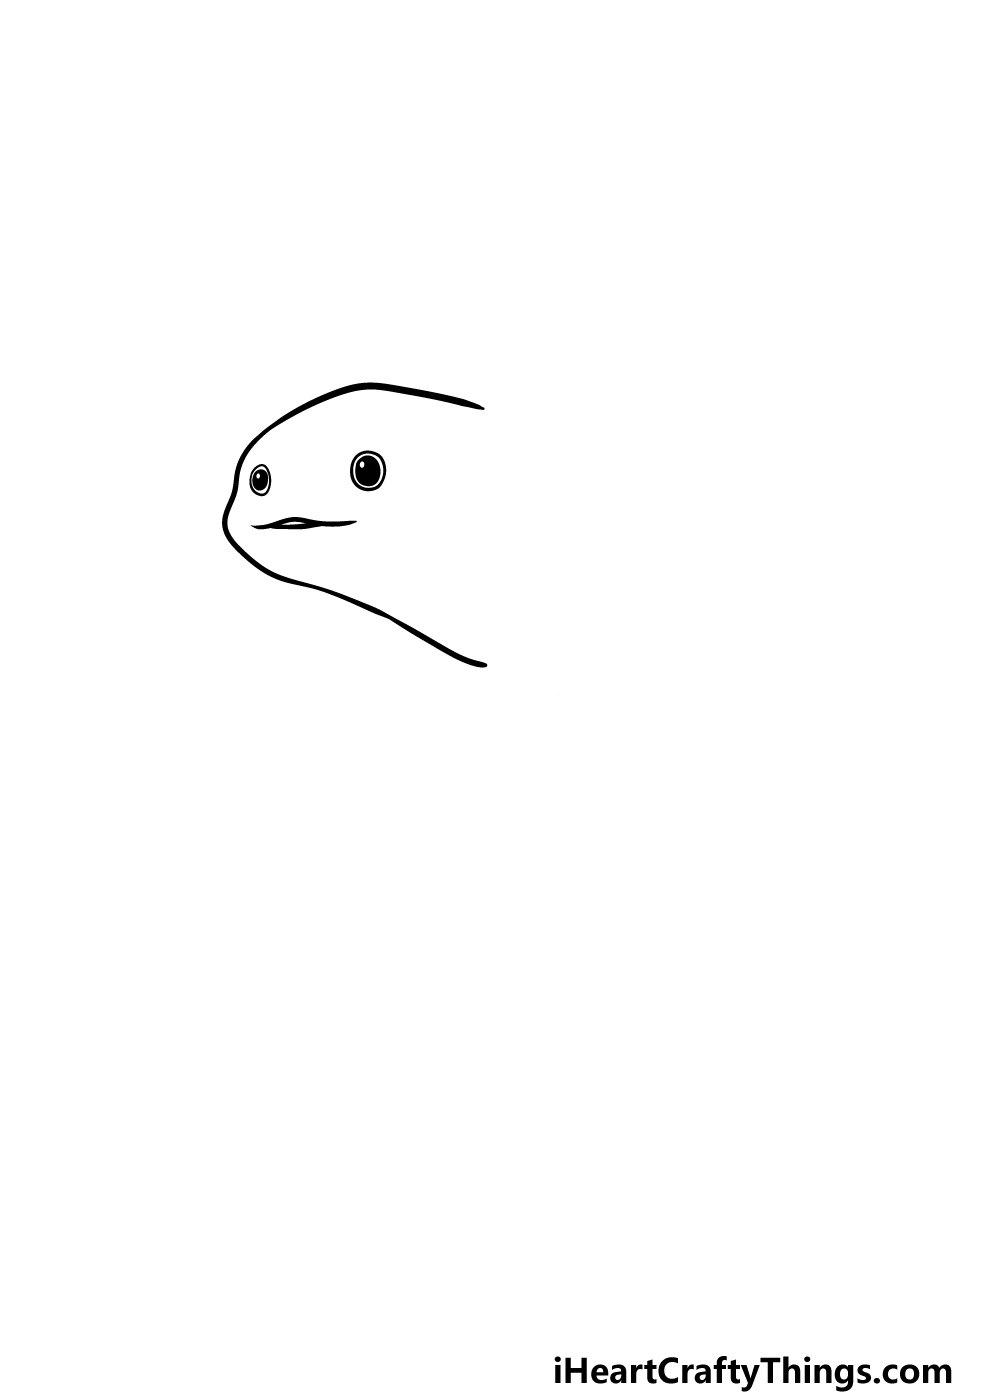 Drawing An Axolotl step 1